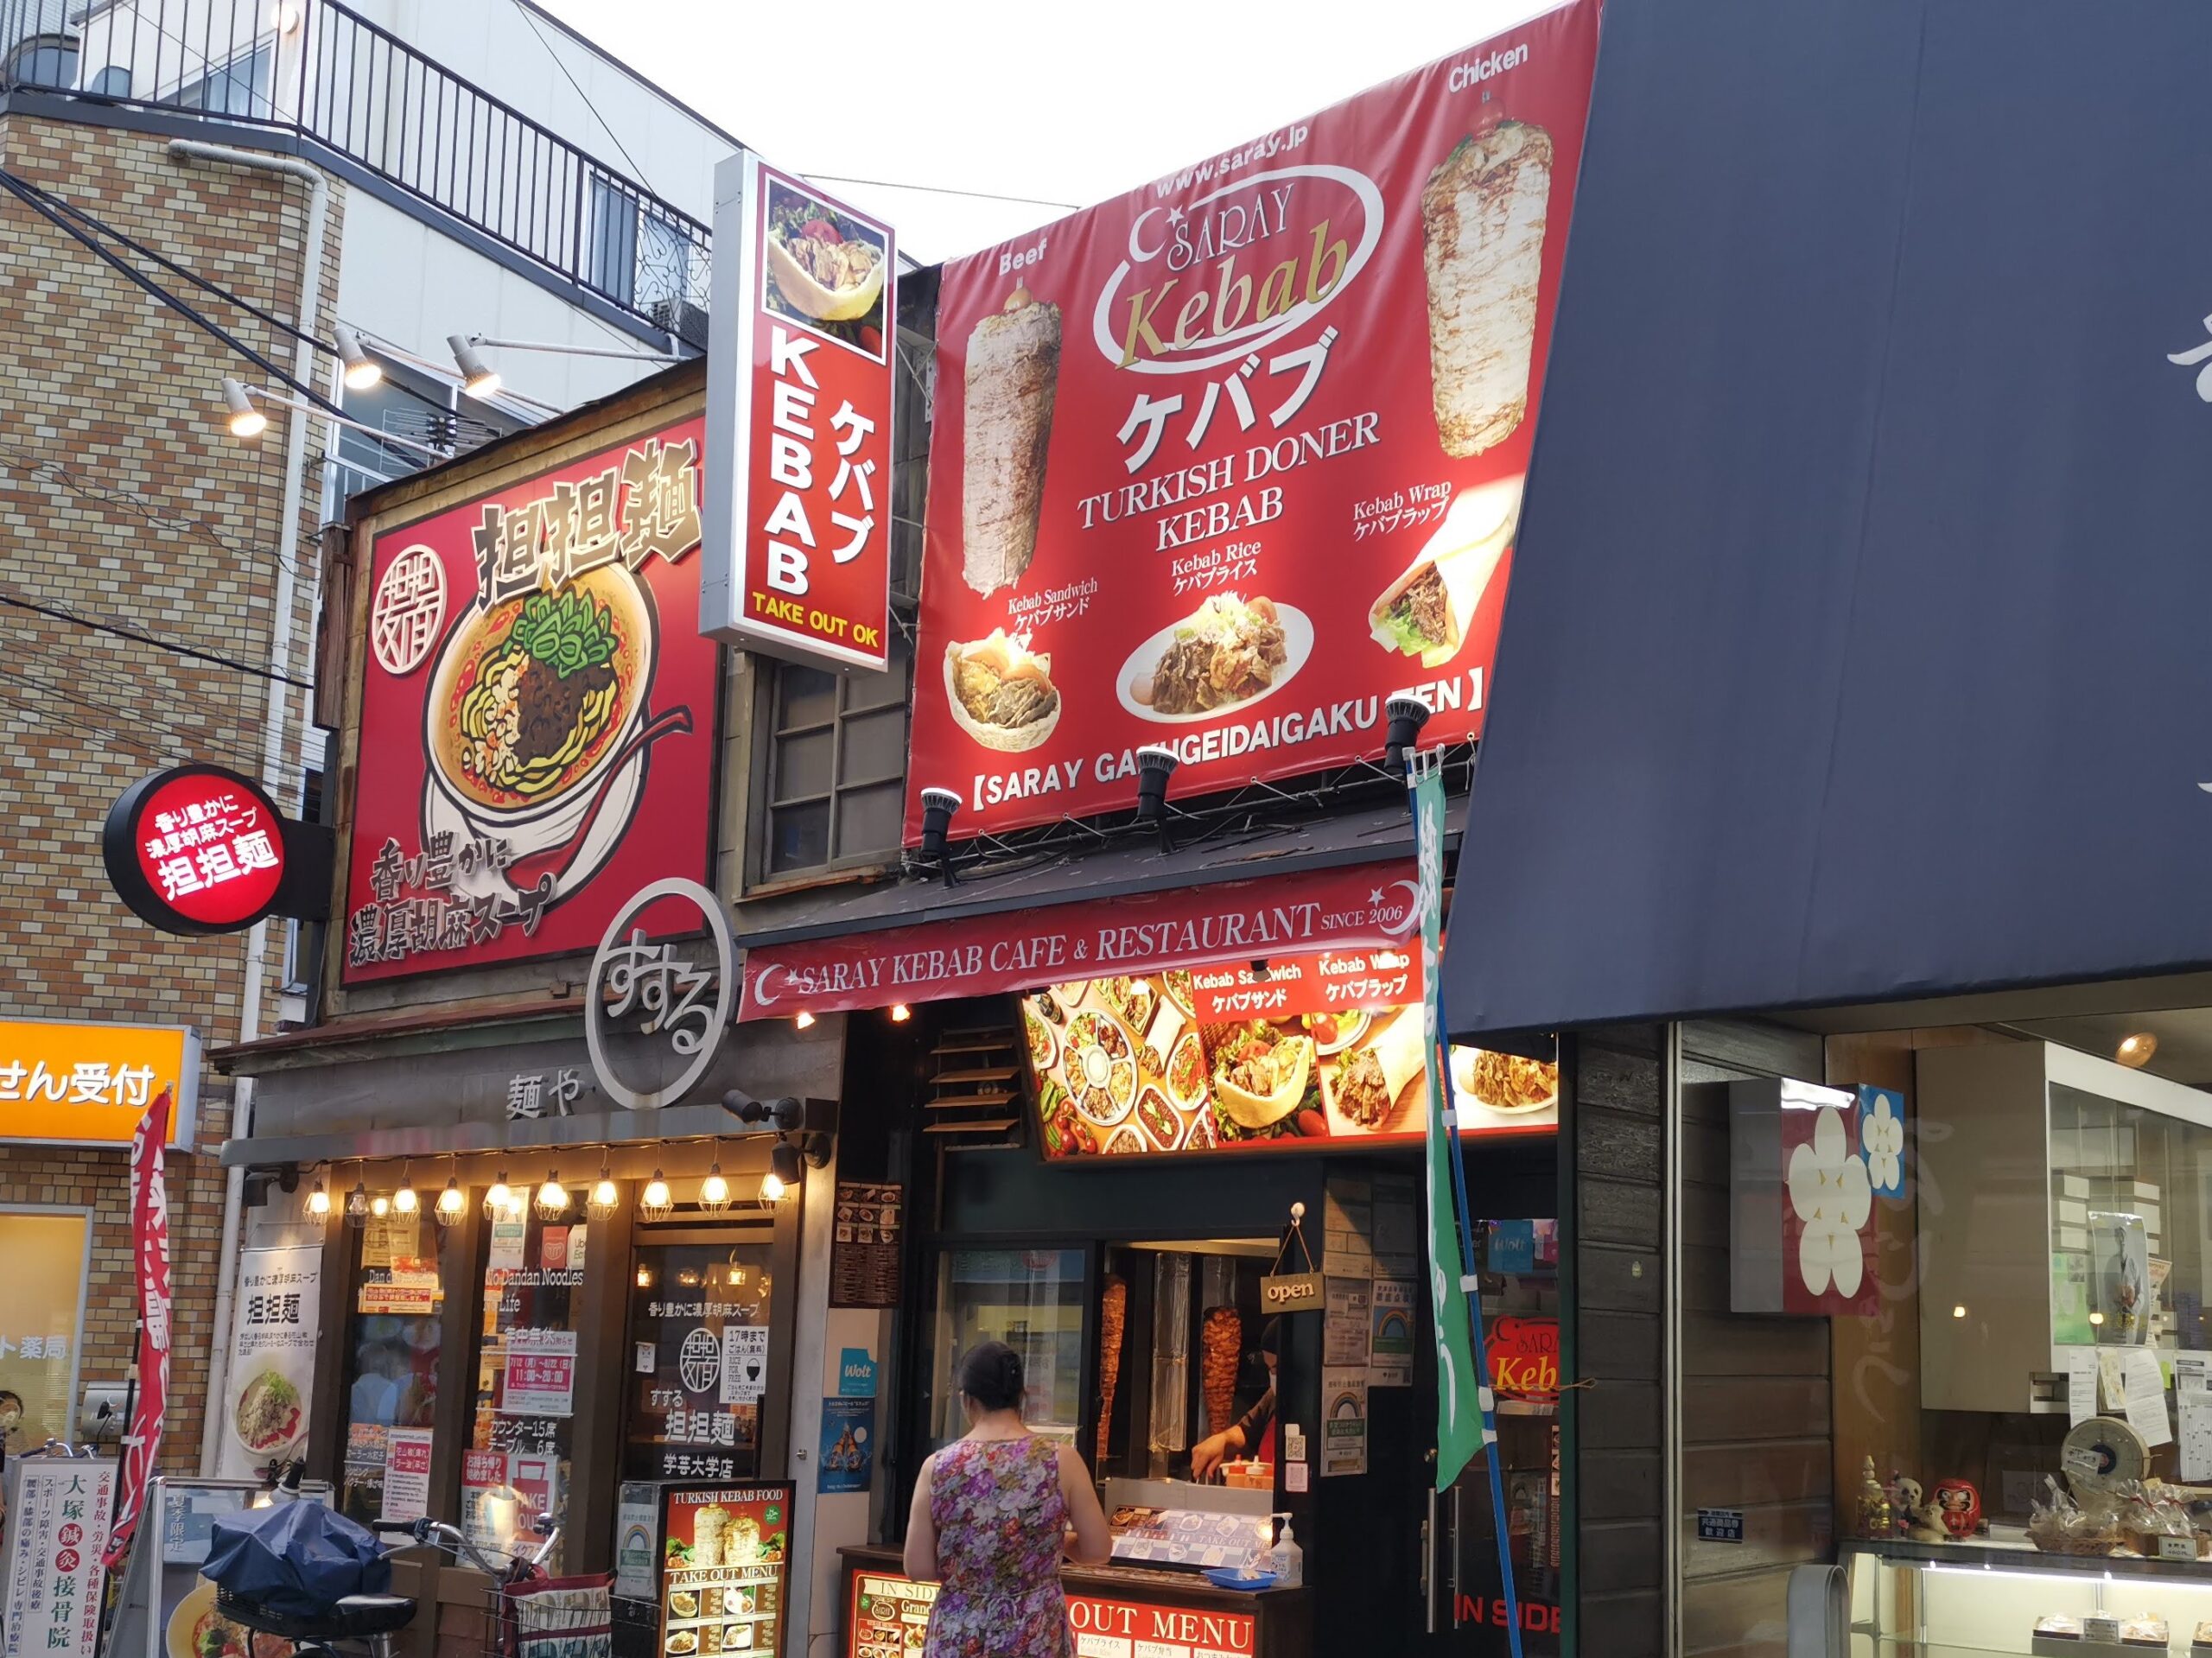 学芸大学 サライケバブのビーフケバブを実食 東京のケバブ屋を紹介するブログ 東京ケバブ